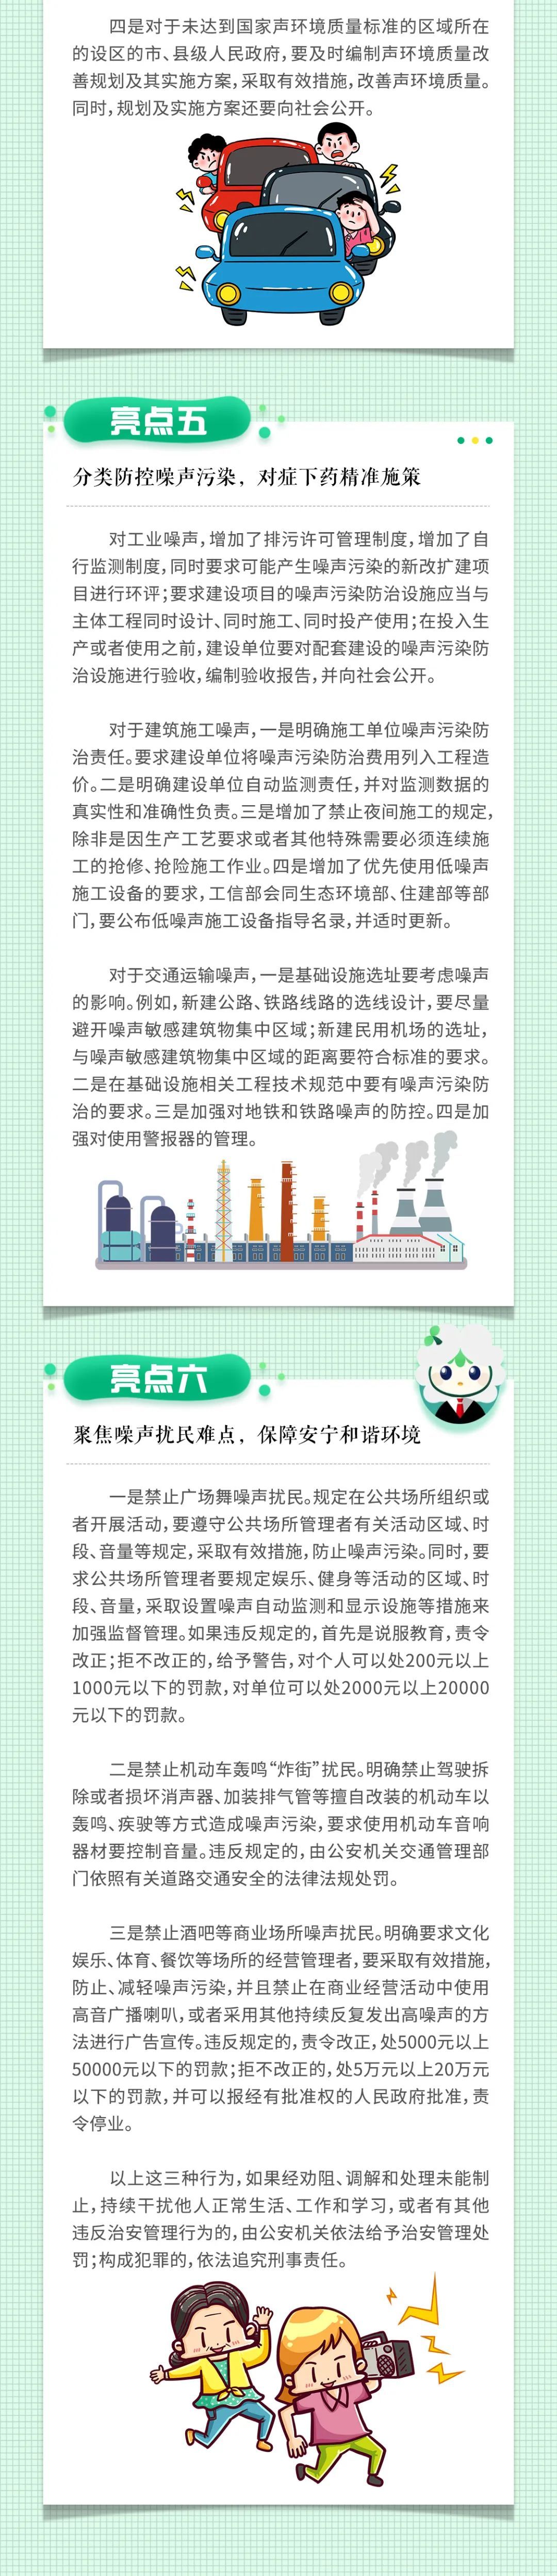 如何防治噪声污染_多环芳烃的污染及防治_中华人民共和国防治船舶污染海洋环境管理条例